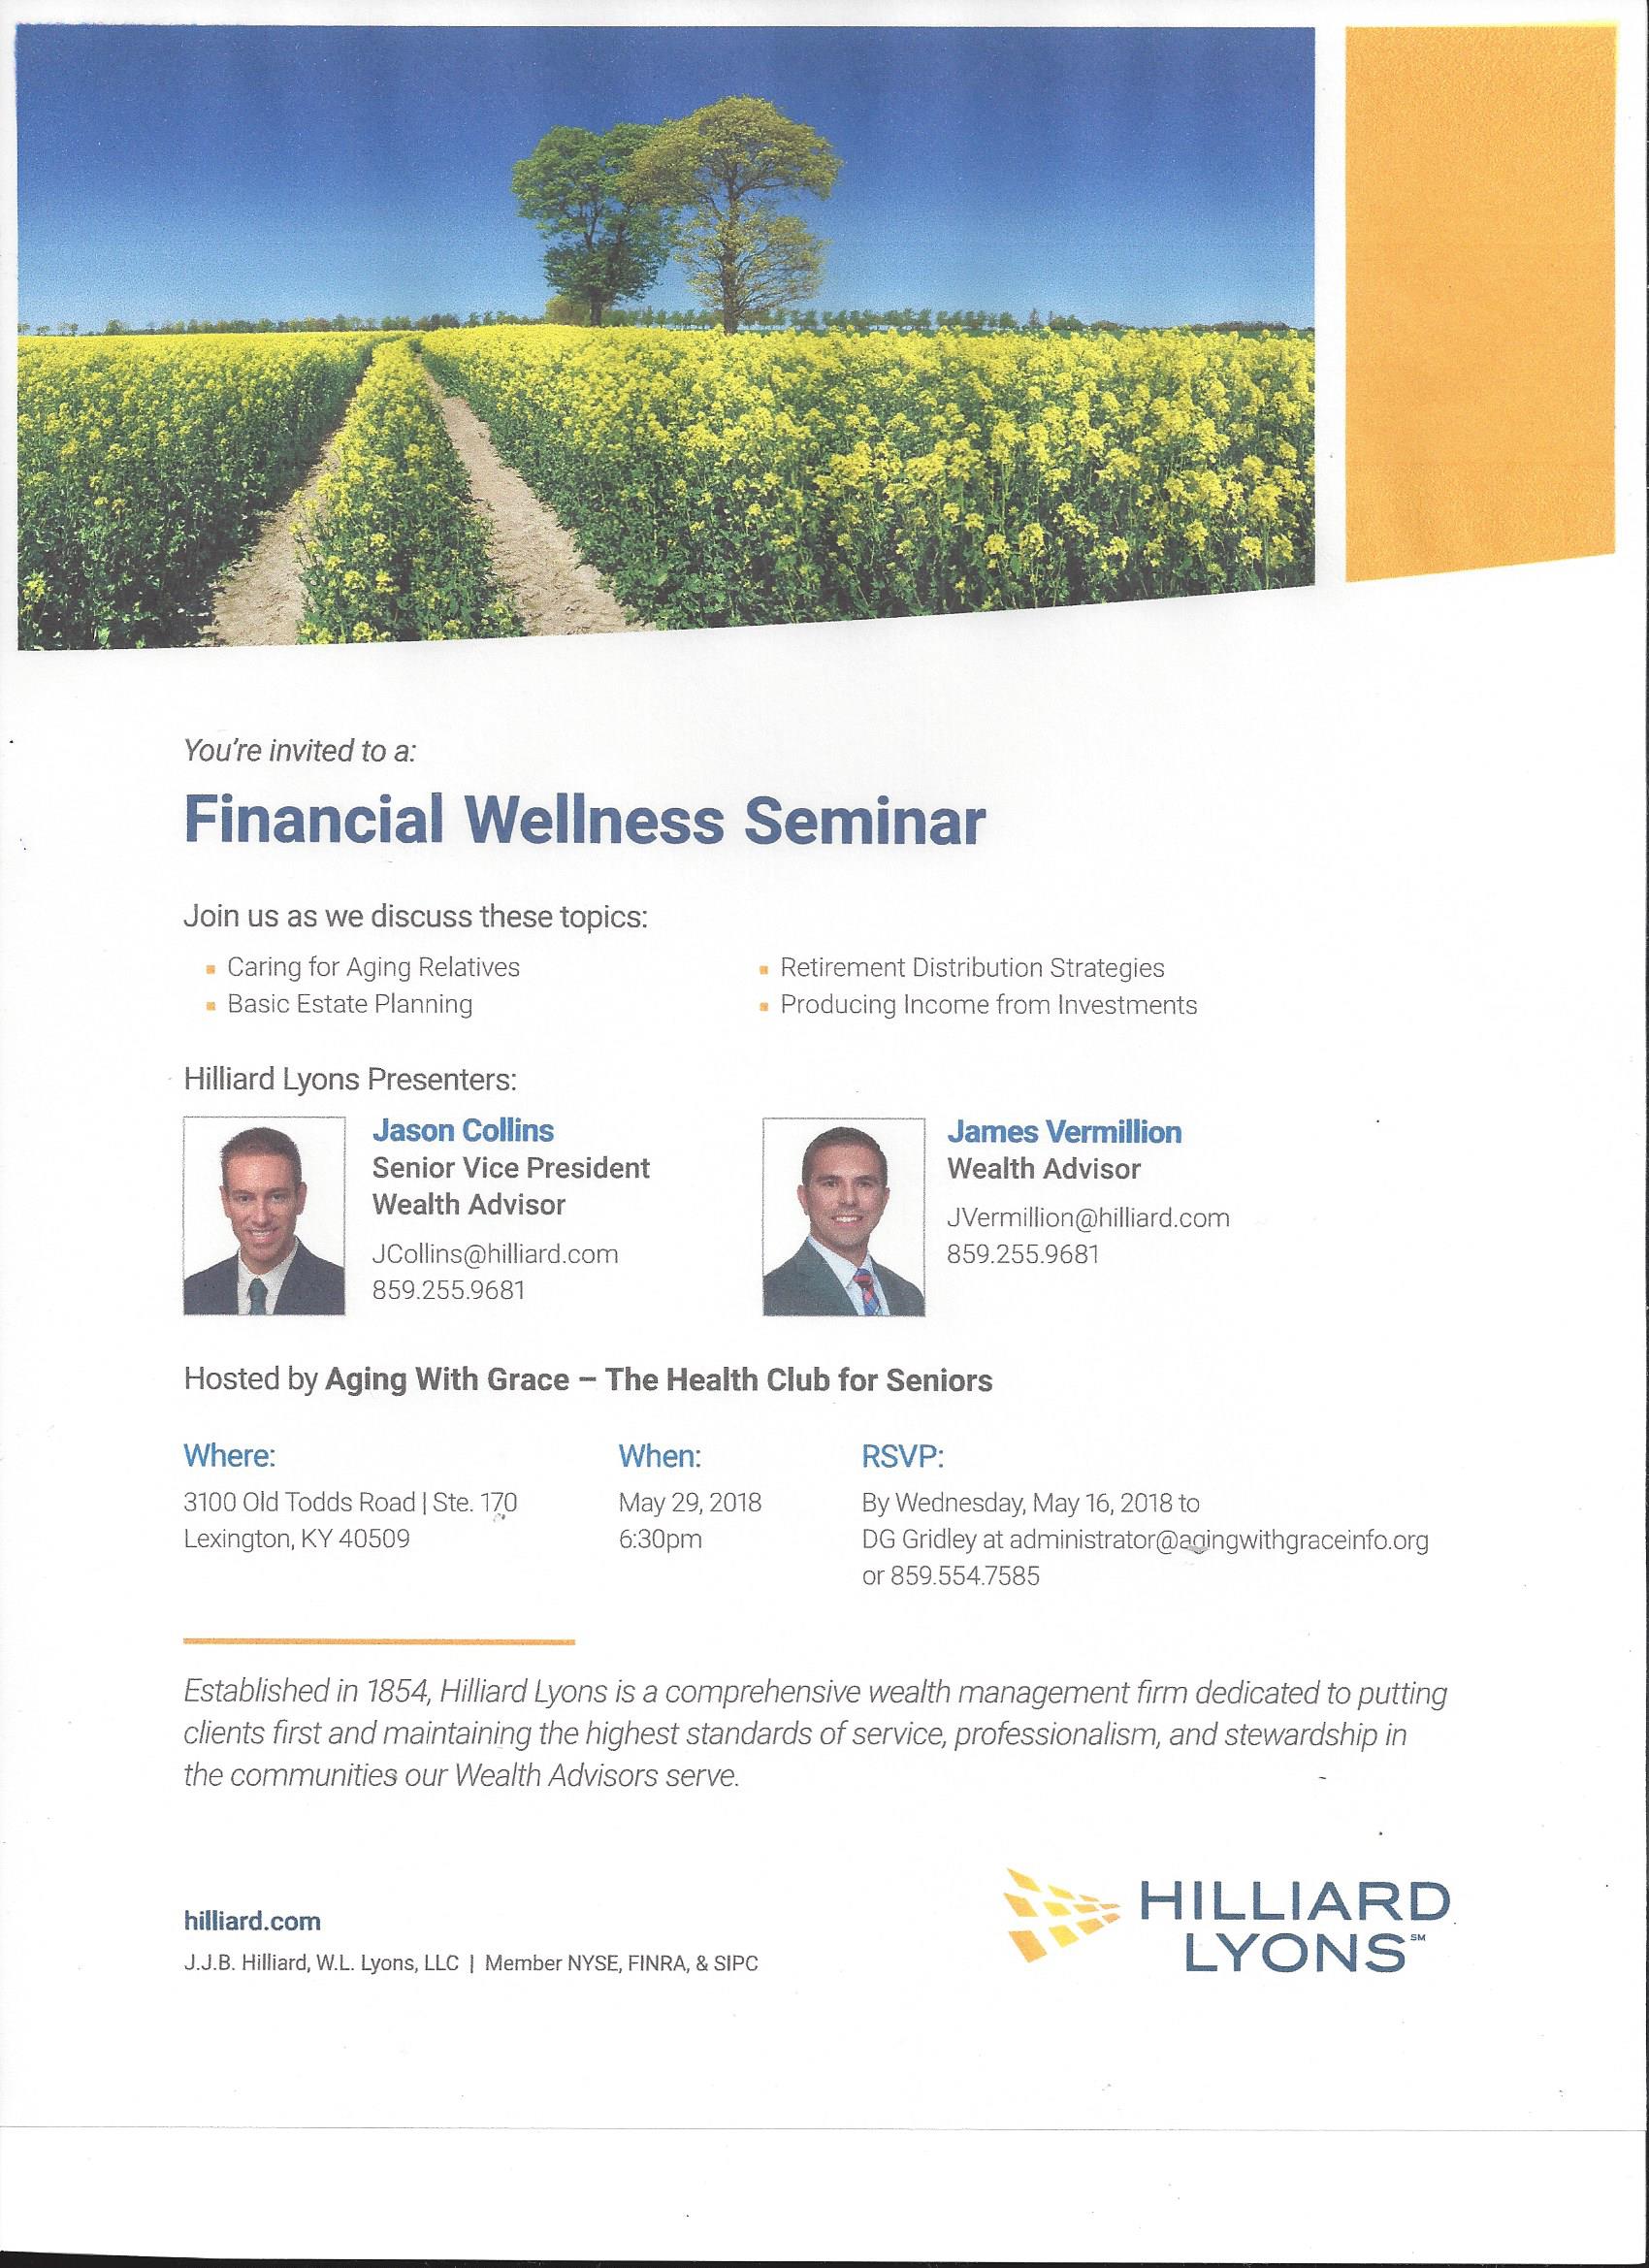 Financial Wellness Seminar